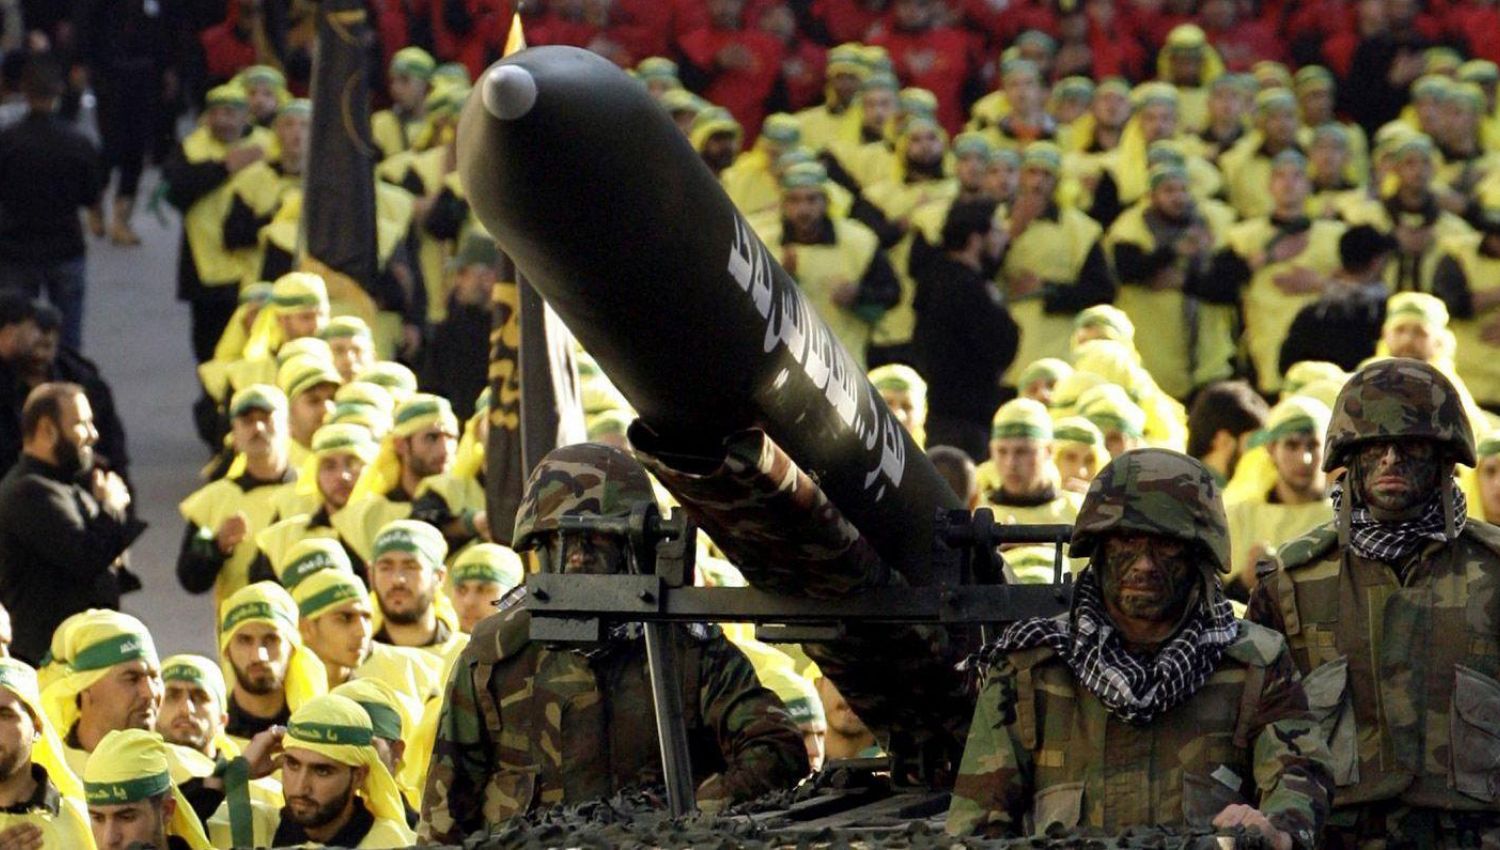 كيف يرى حزب الله المصير الحتمي "لإسرائيل"؟